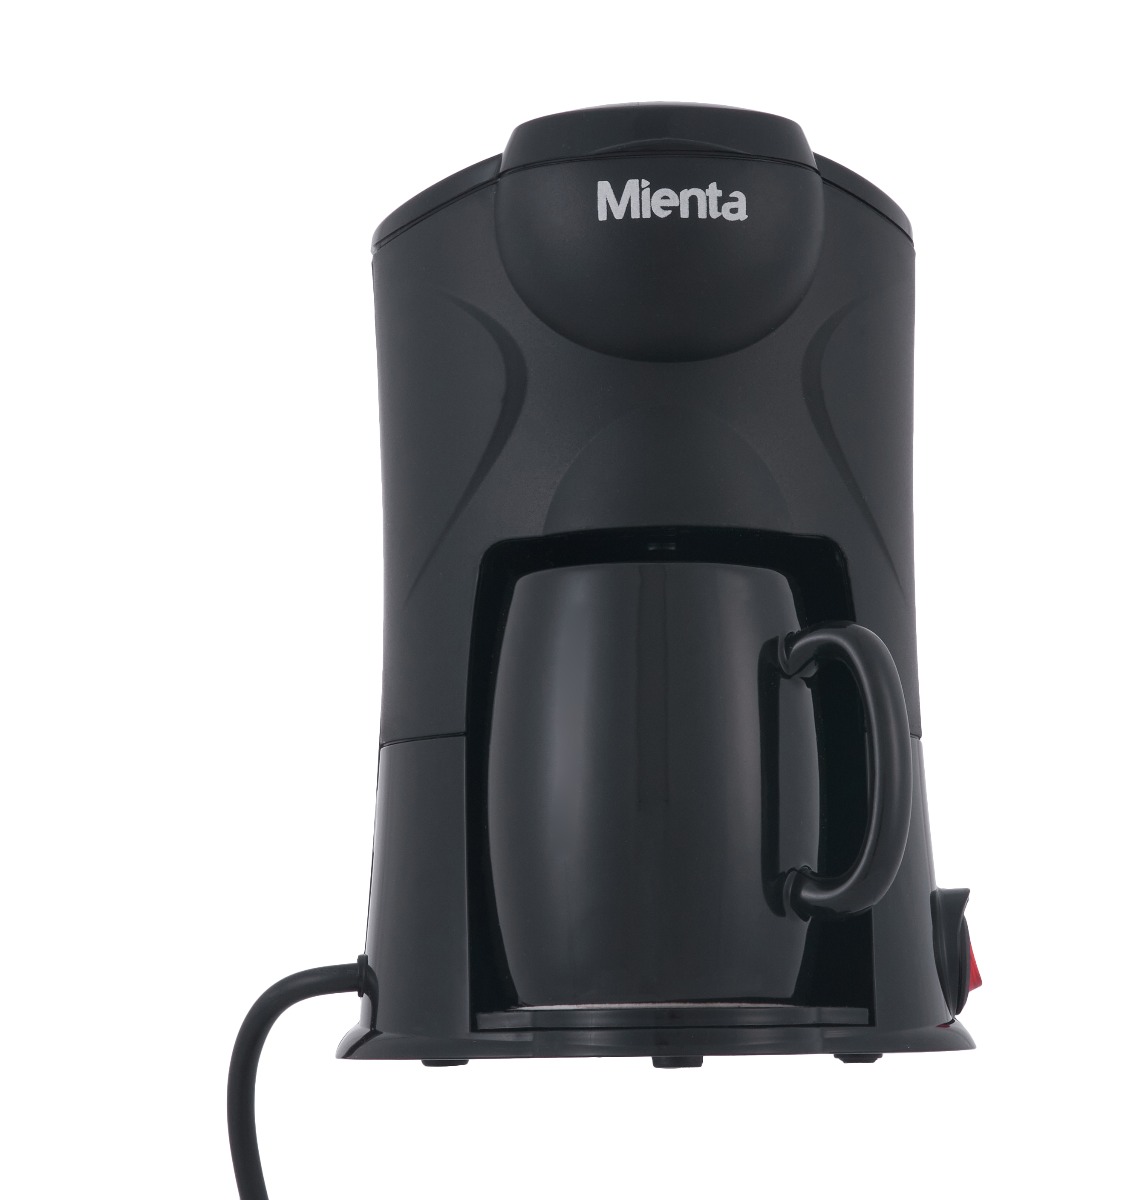 ماكينة قهوة ميانتا، 300 وات، اسود - CM31416A